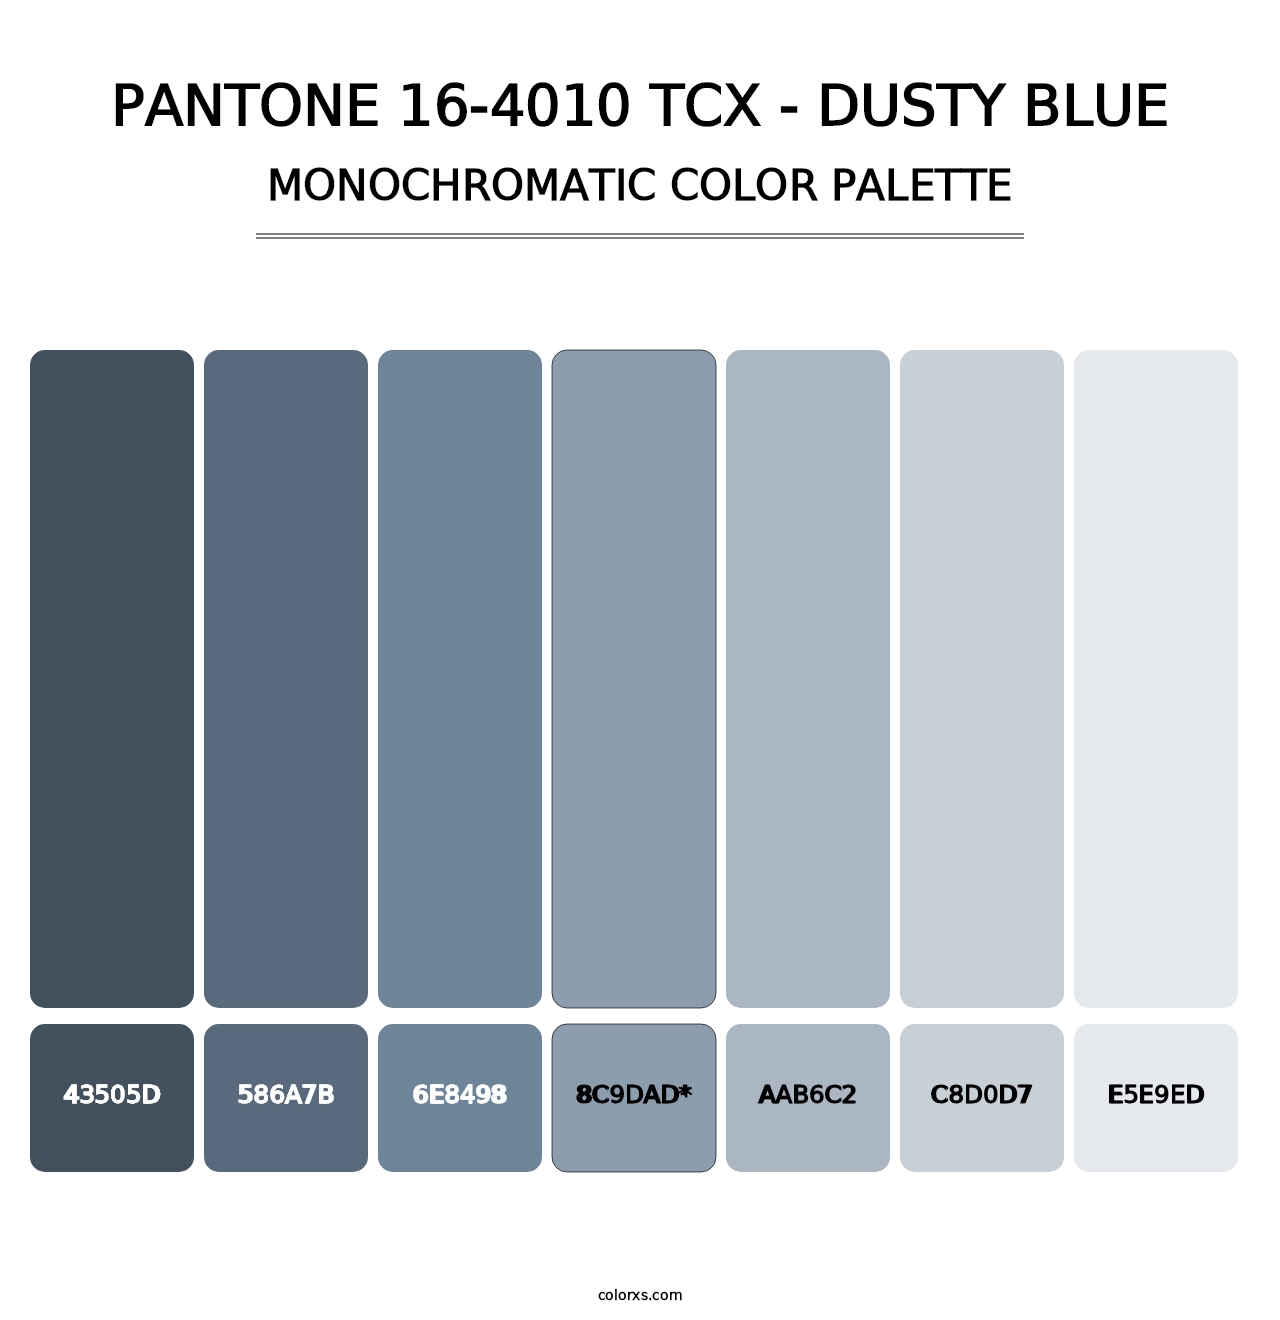 PANTONE 16-4010 TCX - Dusty Blue - Monochromatic Color Palette